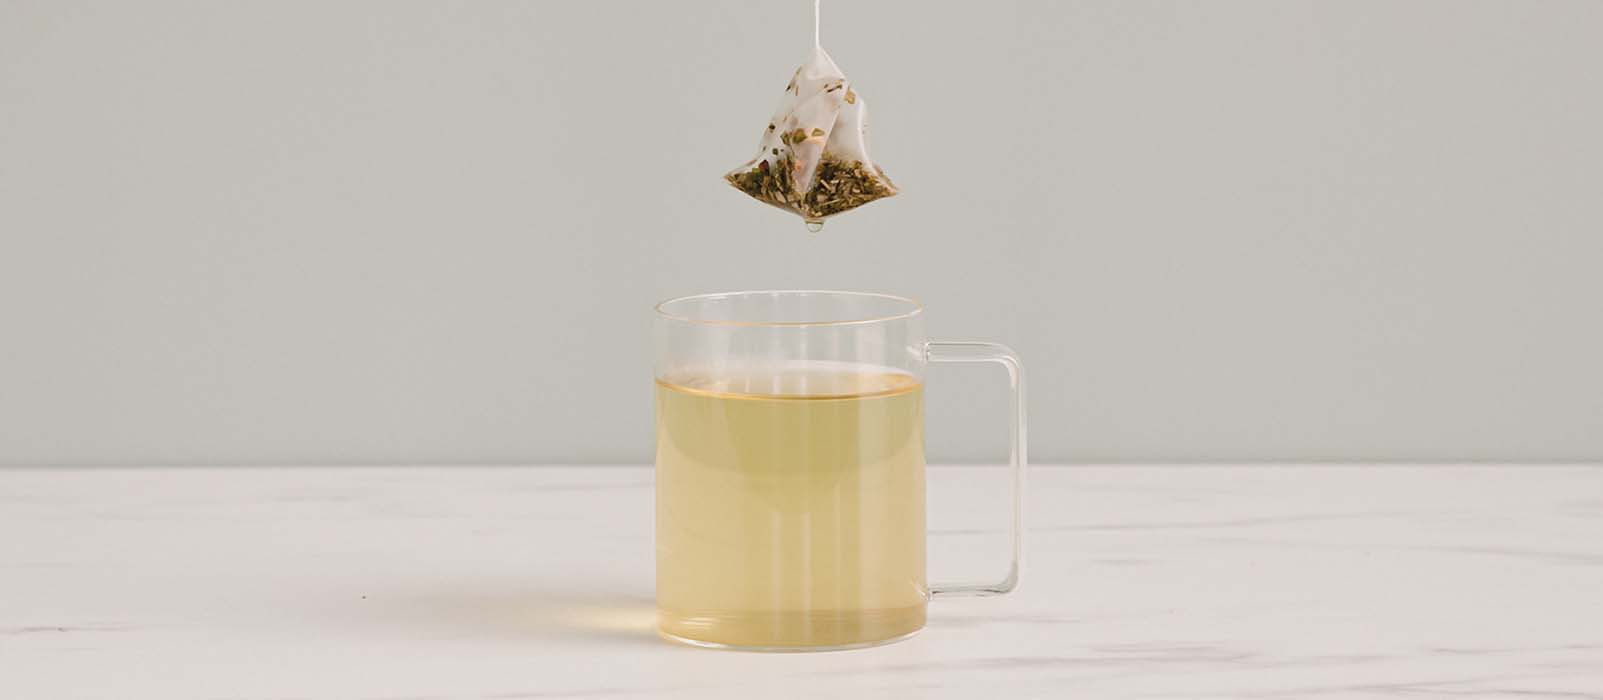 Le thé vert : propriétés, préparation, bienfaits et recette